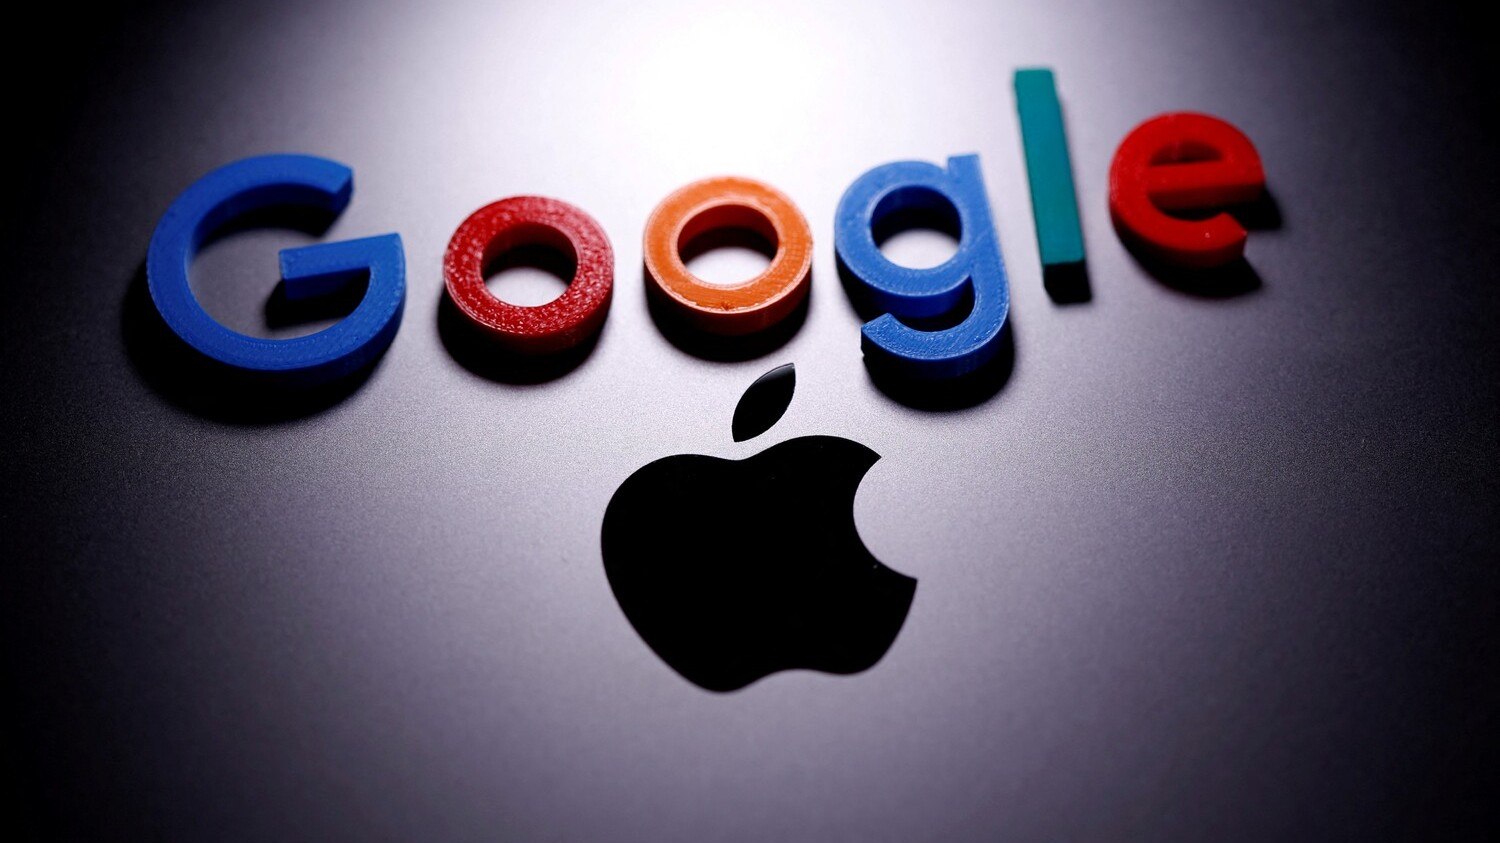 Governos espionam usuários de Apple e Google por meio de notificações, diz senador dos EUA – Notícias